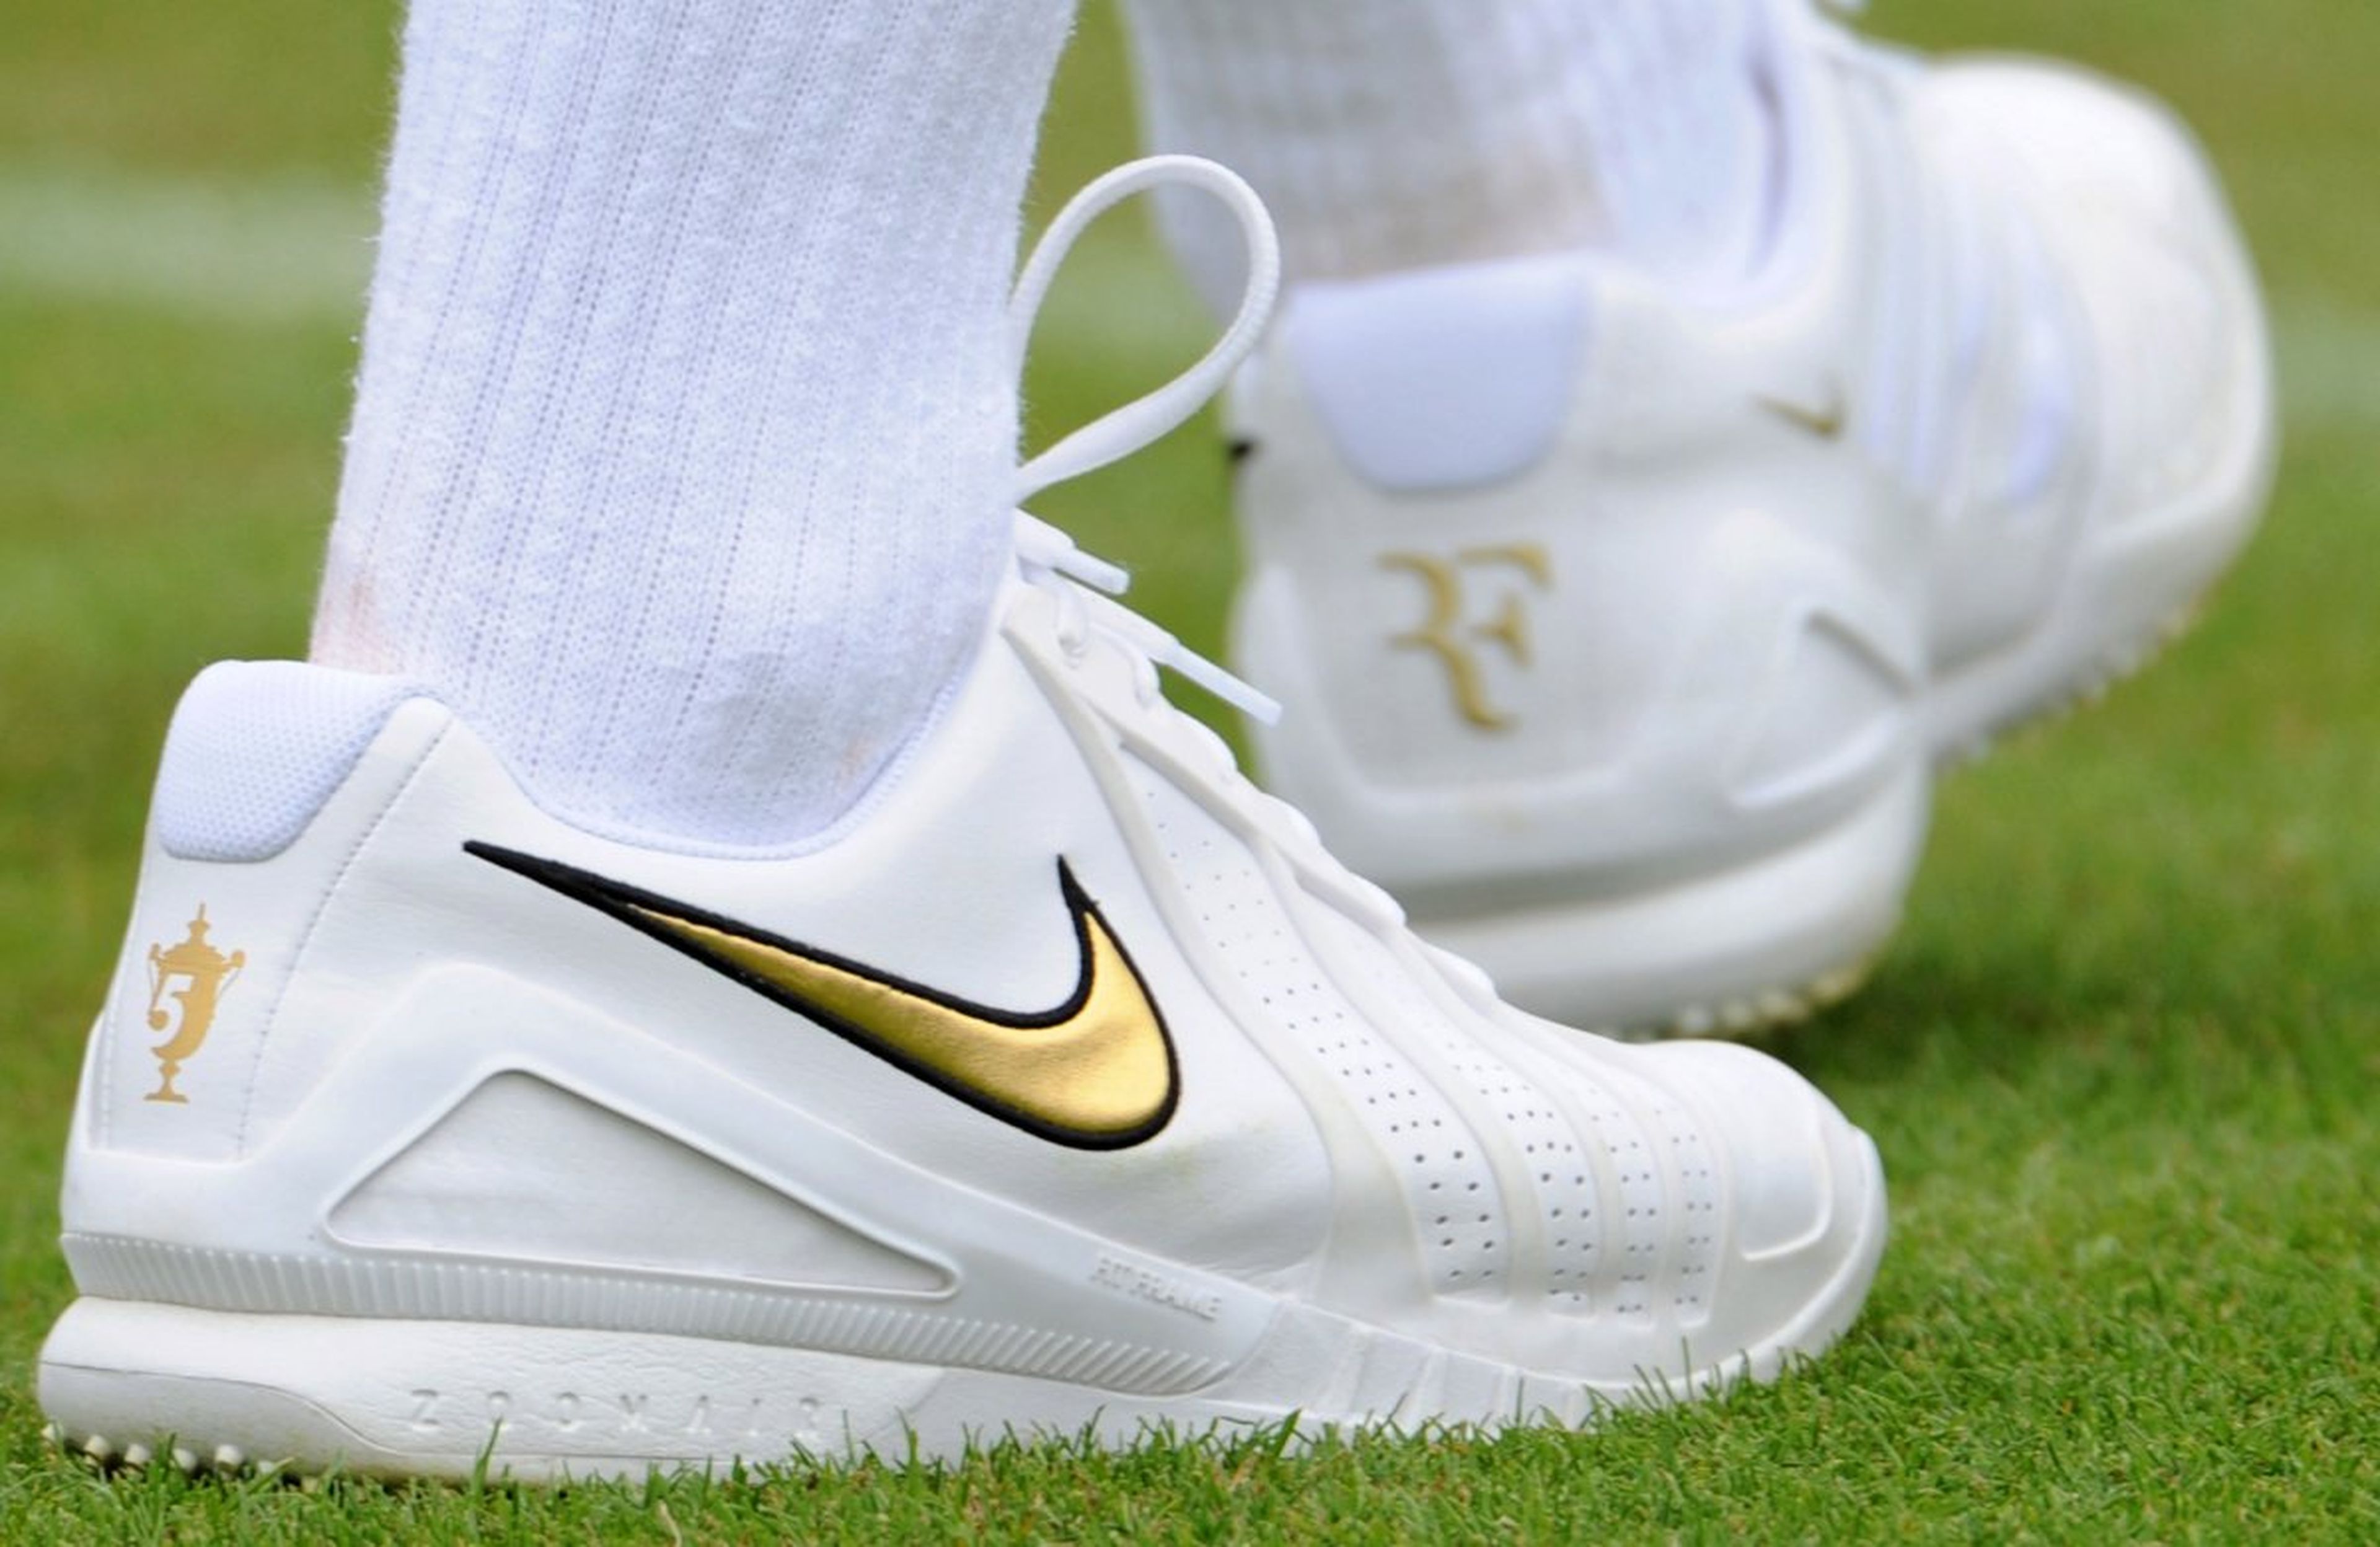 [RE]Zapatillas Nike utilizadas por el tenista Roger Federer.